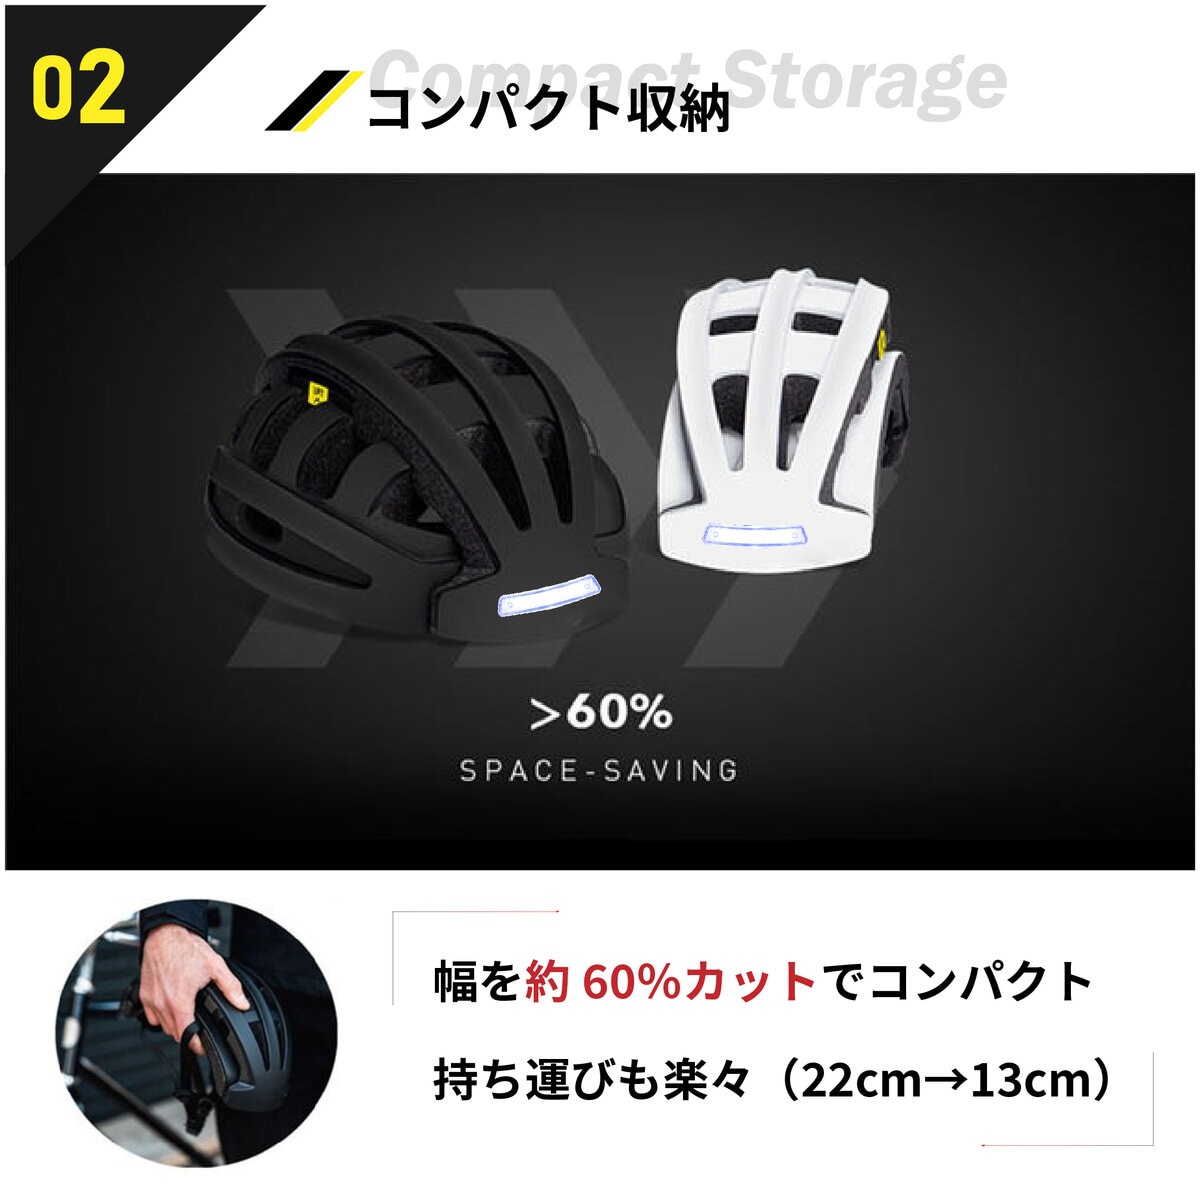 ブリンガー 折り畳み式 自転車 ヘルメット FT-888D ブラック | Costco Japan